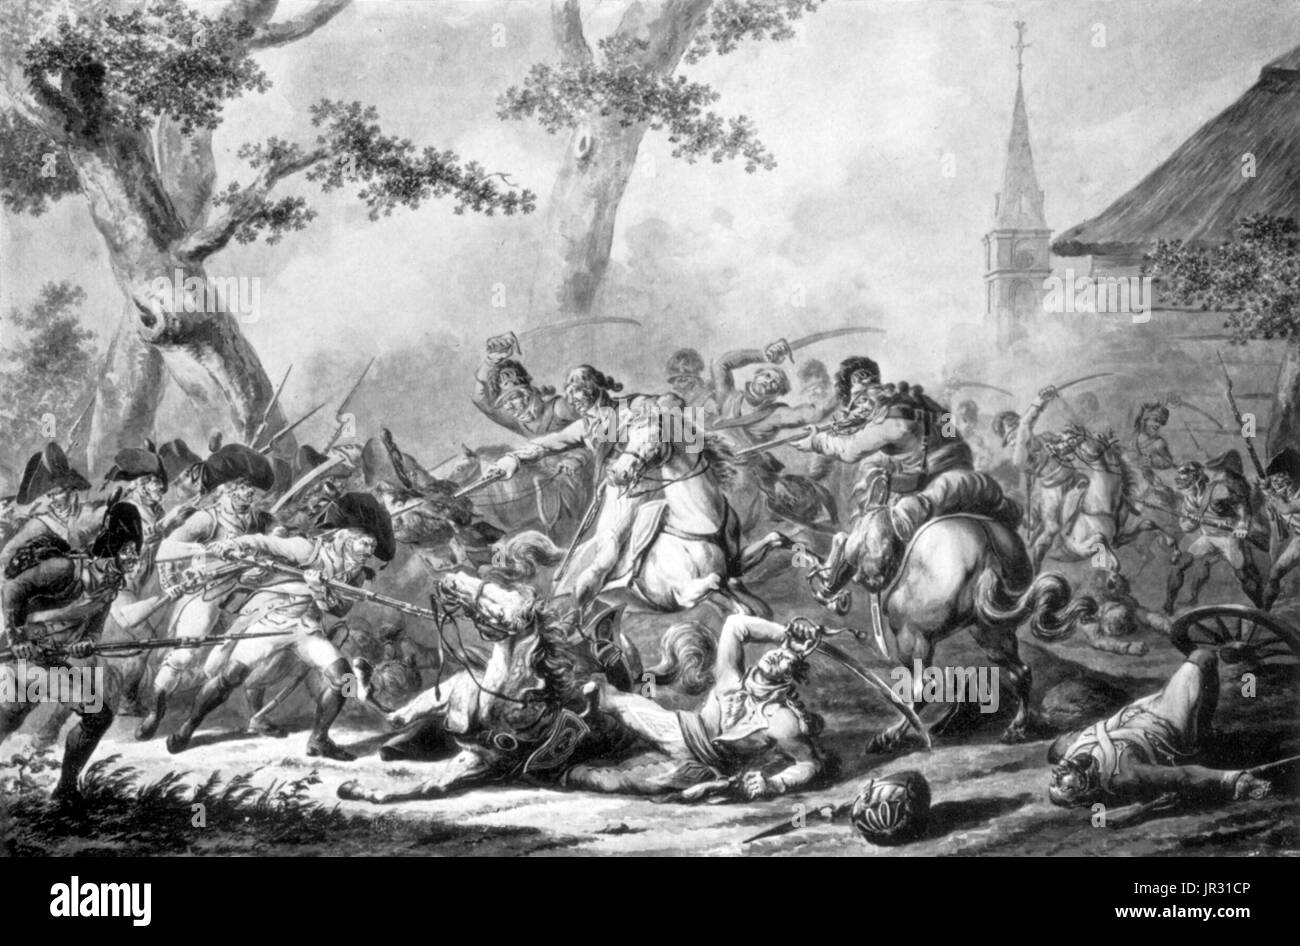 Durante le guerre napoleoniche, dragoni generalmente assume un ruolo di cavalleria, pur rimanendo un accendino di classe le truppe montate a le corazzate cuirassiers. Dragoni rode cavalli più grandi rispetto alla luce della cavalleria e maneggiato direttamente, piuttosto che spade ricurve. L'imperatore Napoleone spesso formato completare le divisioni al di fuori del suo 30 reggimenti di dragoon e li hanno usati come soldati di cavalleria di battaglia per rompere il nemico principale resistenza. Nel 1809, il francese dragoni raccolto notevoli successi contro eserciti spagnoli alla battaglia di Ocaña e la battaglia di Alba de Tormes. British Heavy dragoni realizzato cariche devastanti contro infa francese Foto Stock